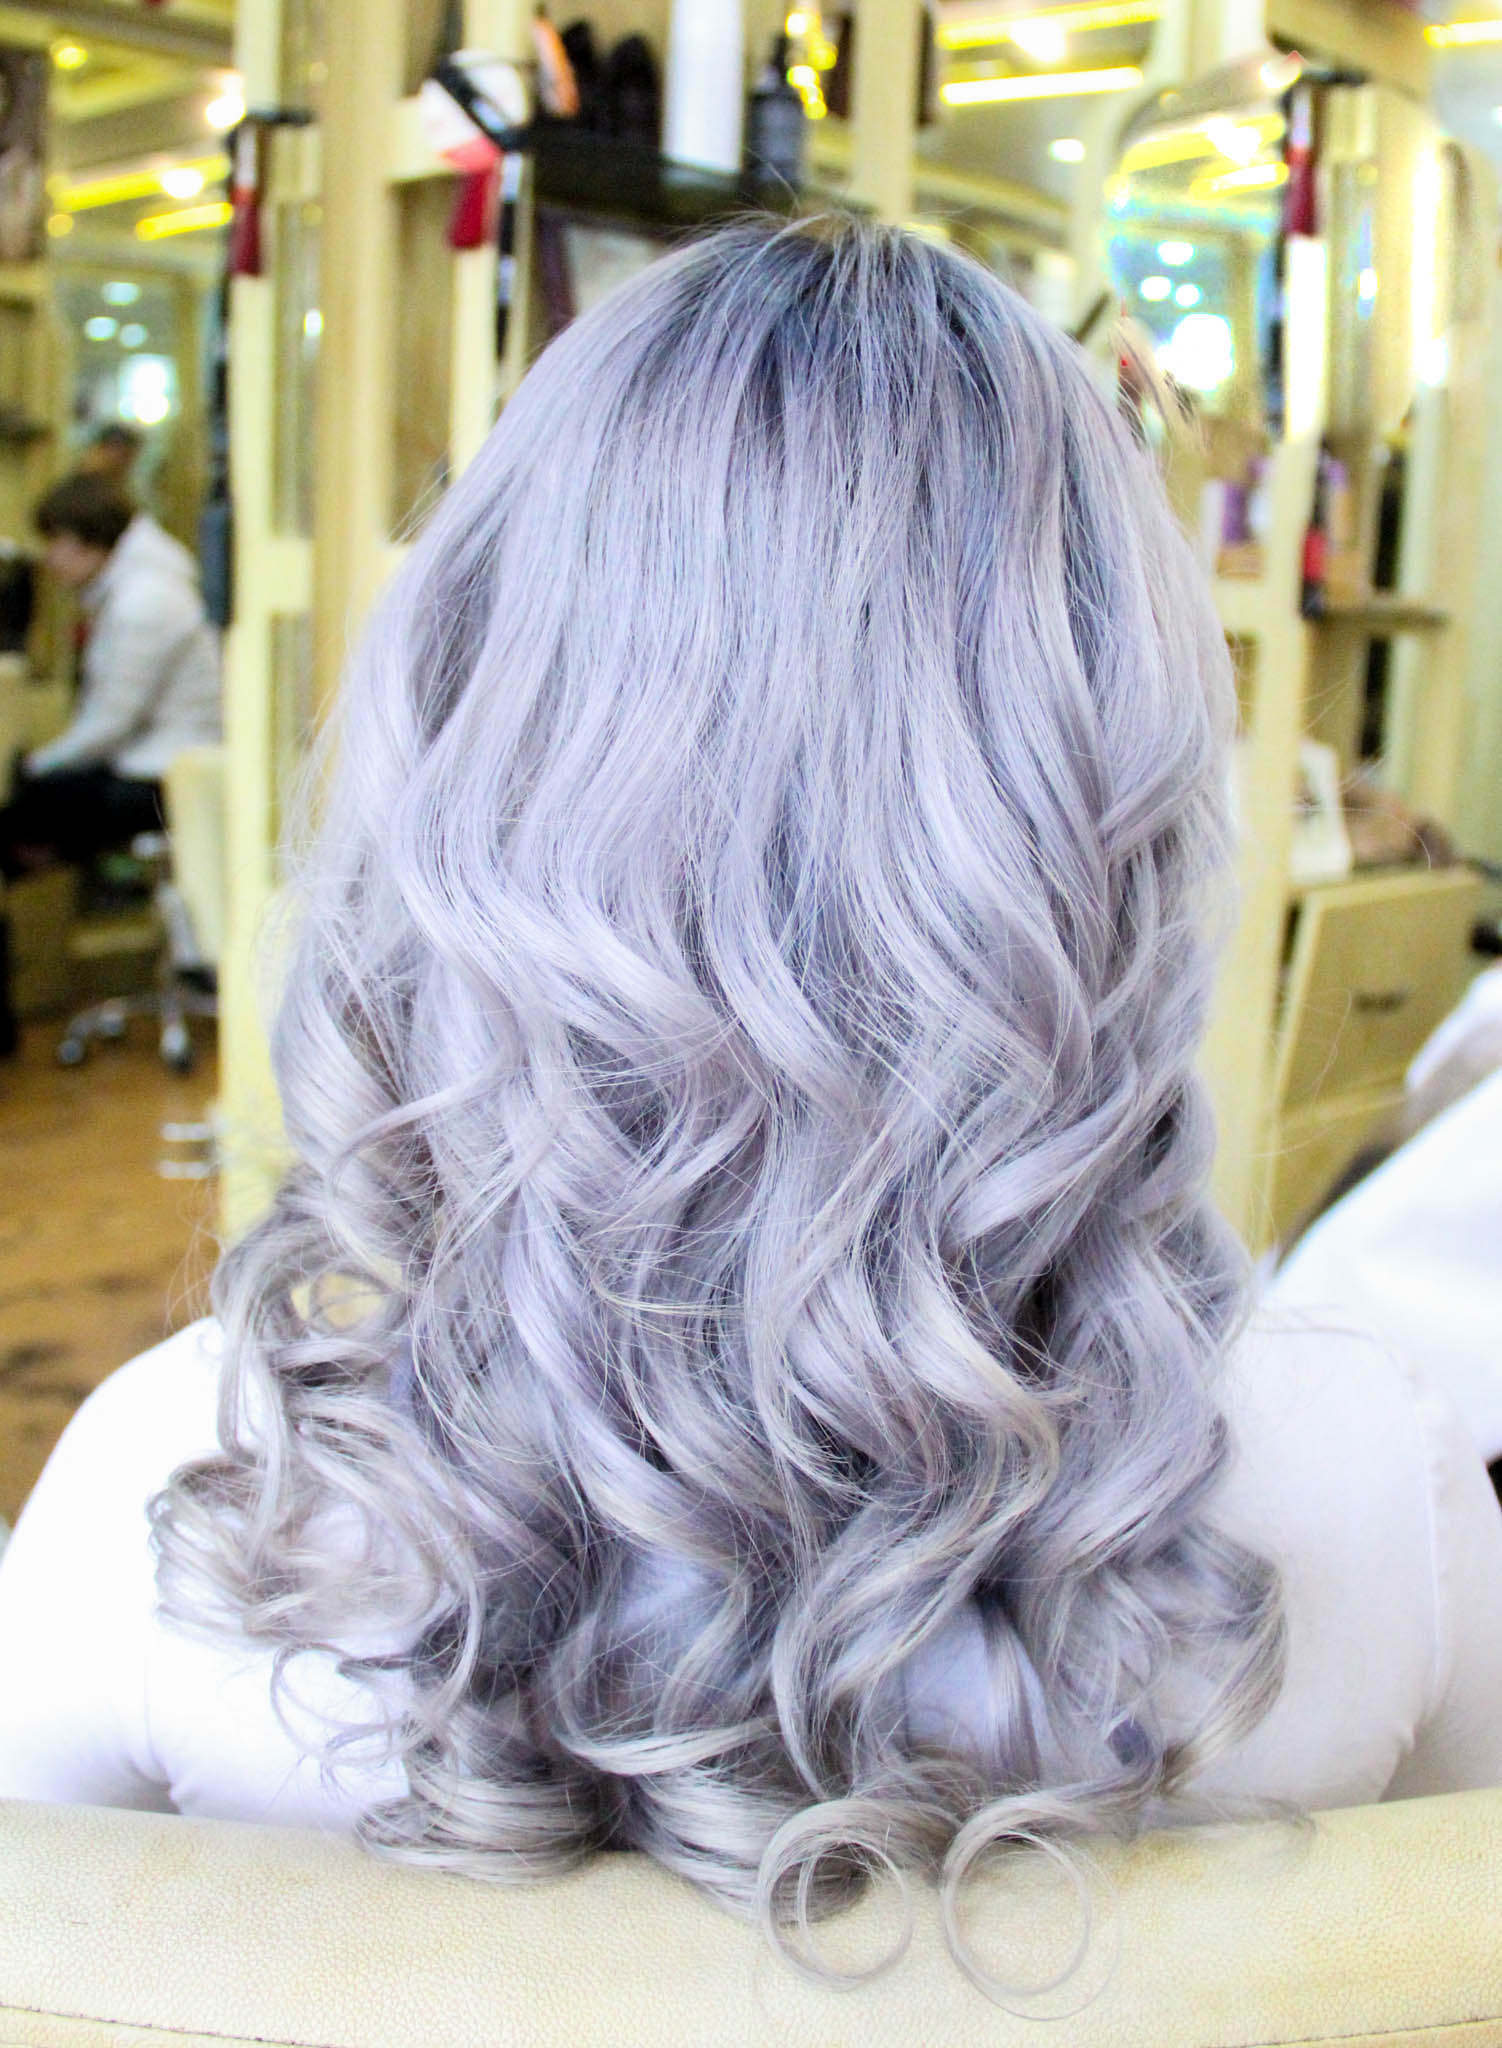 Review Nhuộm tóc highlight màu tím  14 cách phối màu ảo diệu trendy nhất  hiện nay  VNTESTBANK